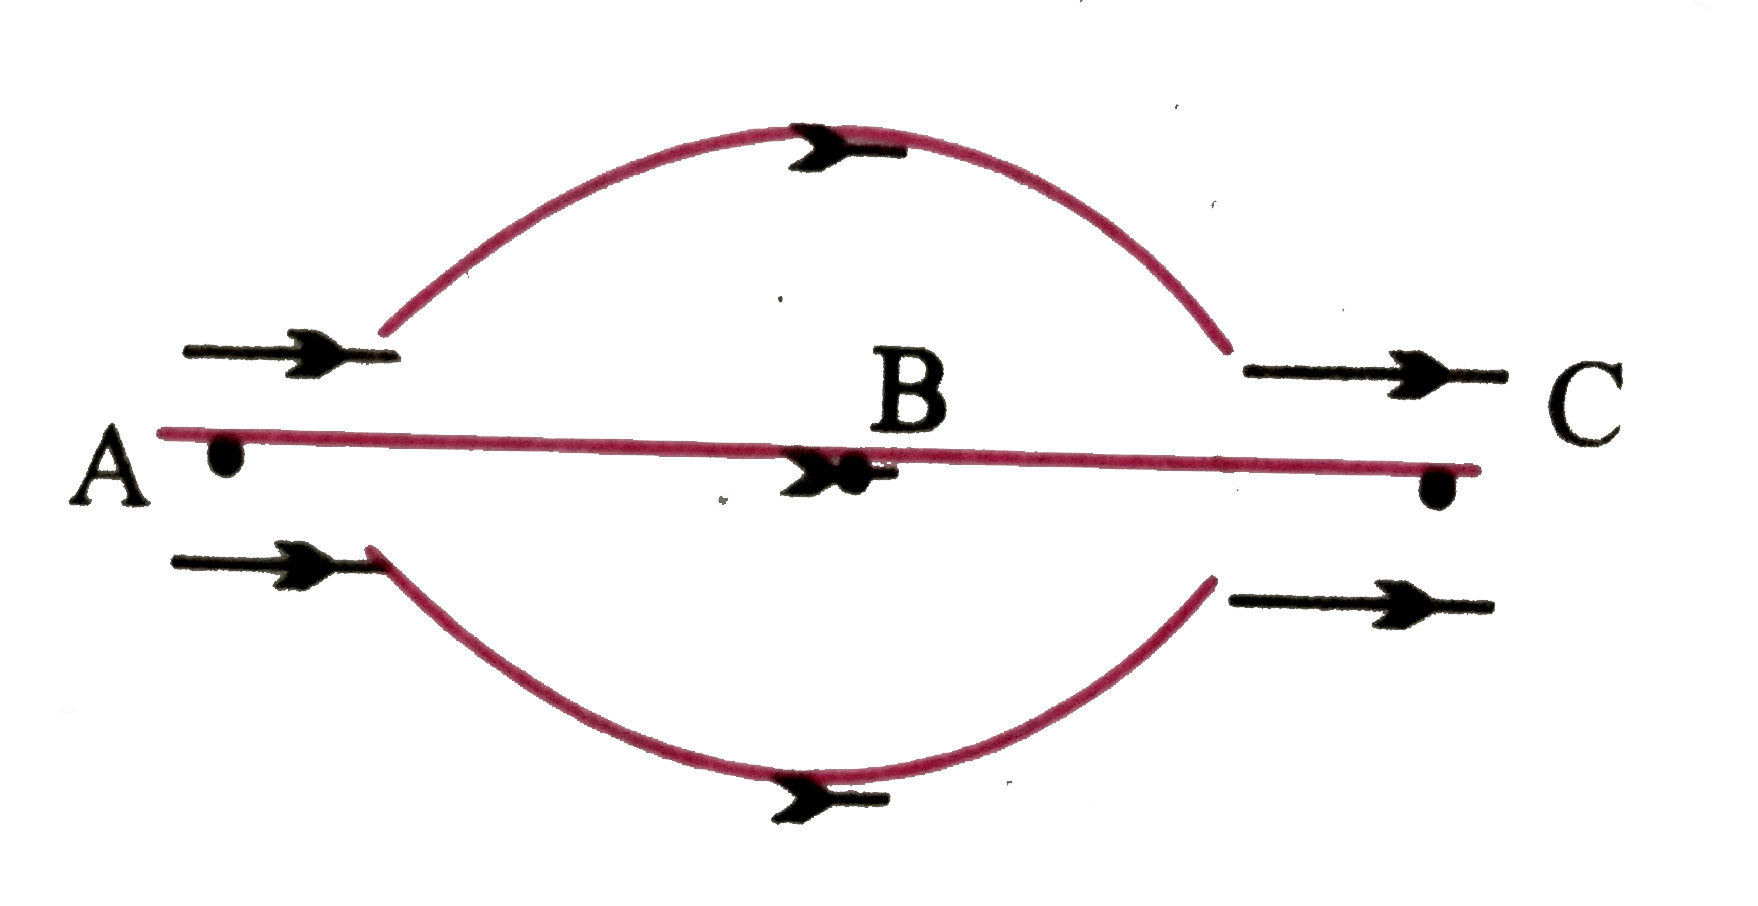 संलग्न चित्र में किसी विद्युत-क्षेत्र से संबंधित कुछ विद्युत-बल रेखाएँ प्रदर्शित की गई हैं। तब -